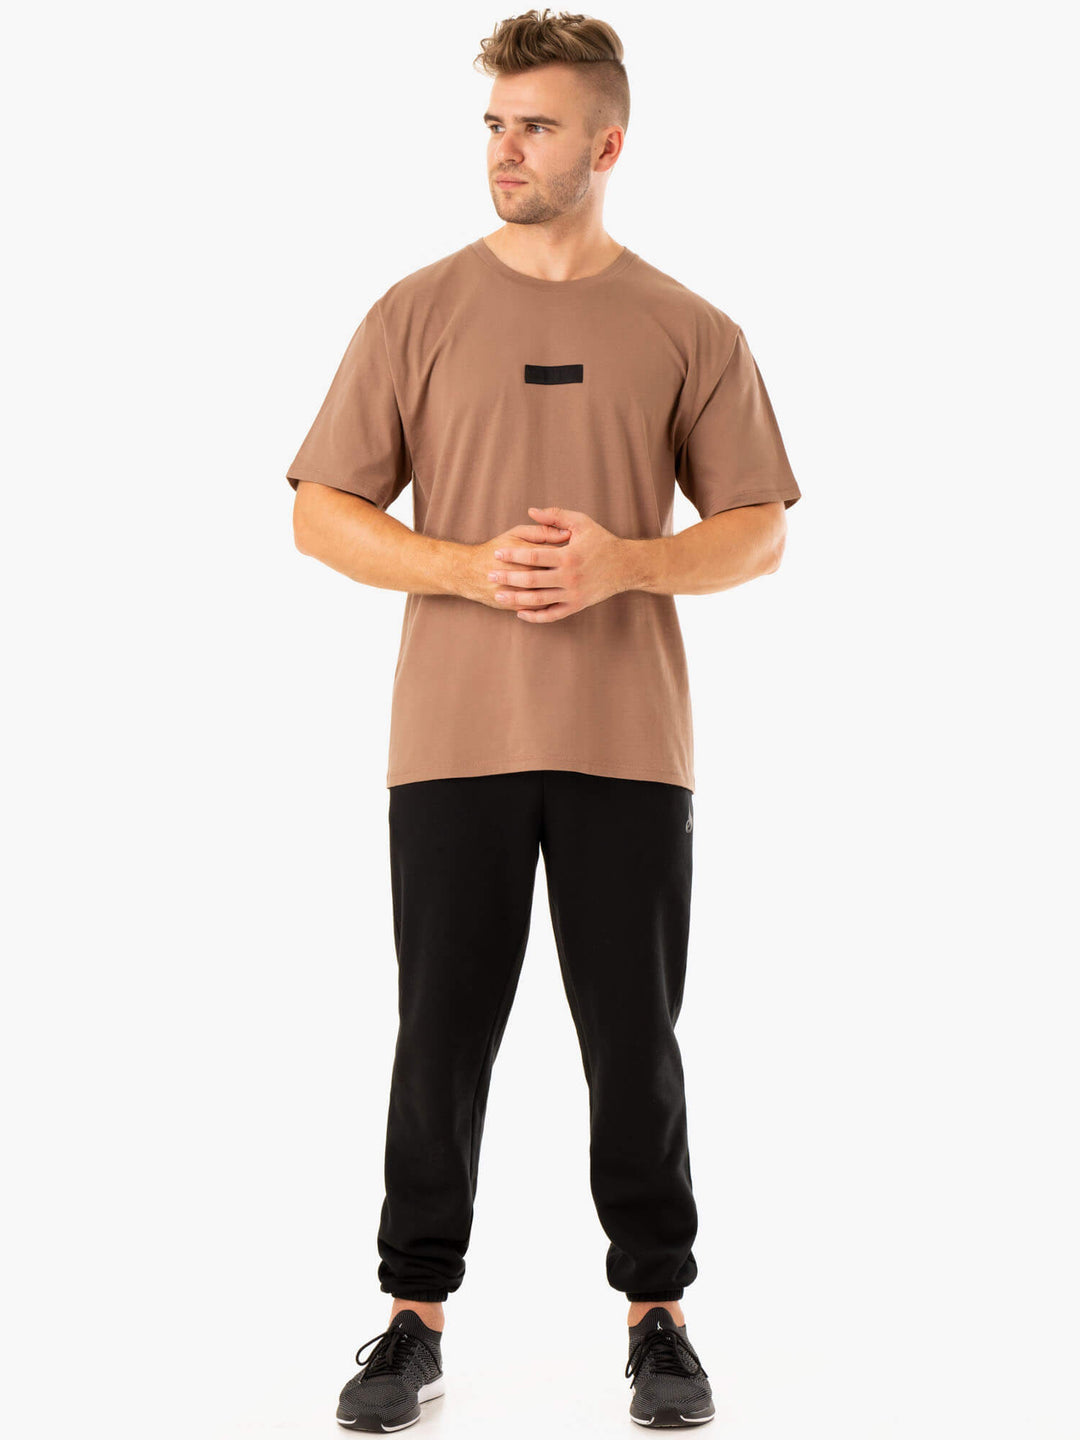 Unisex Oversized T-Shirt - Mocha Clothing Ryderwear 